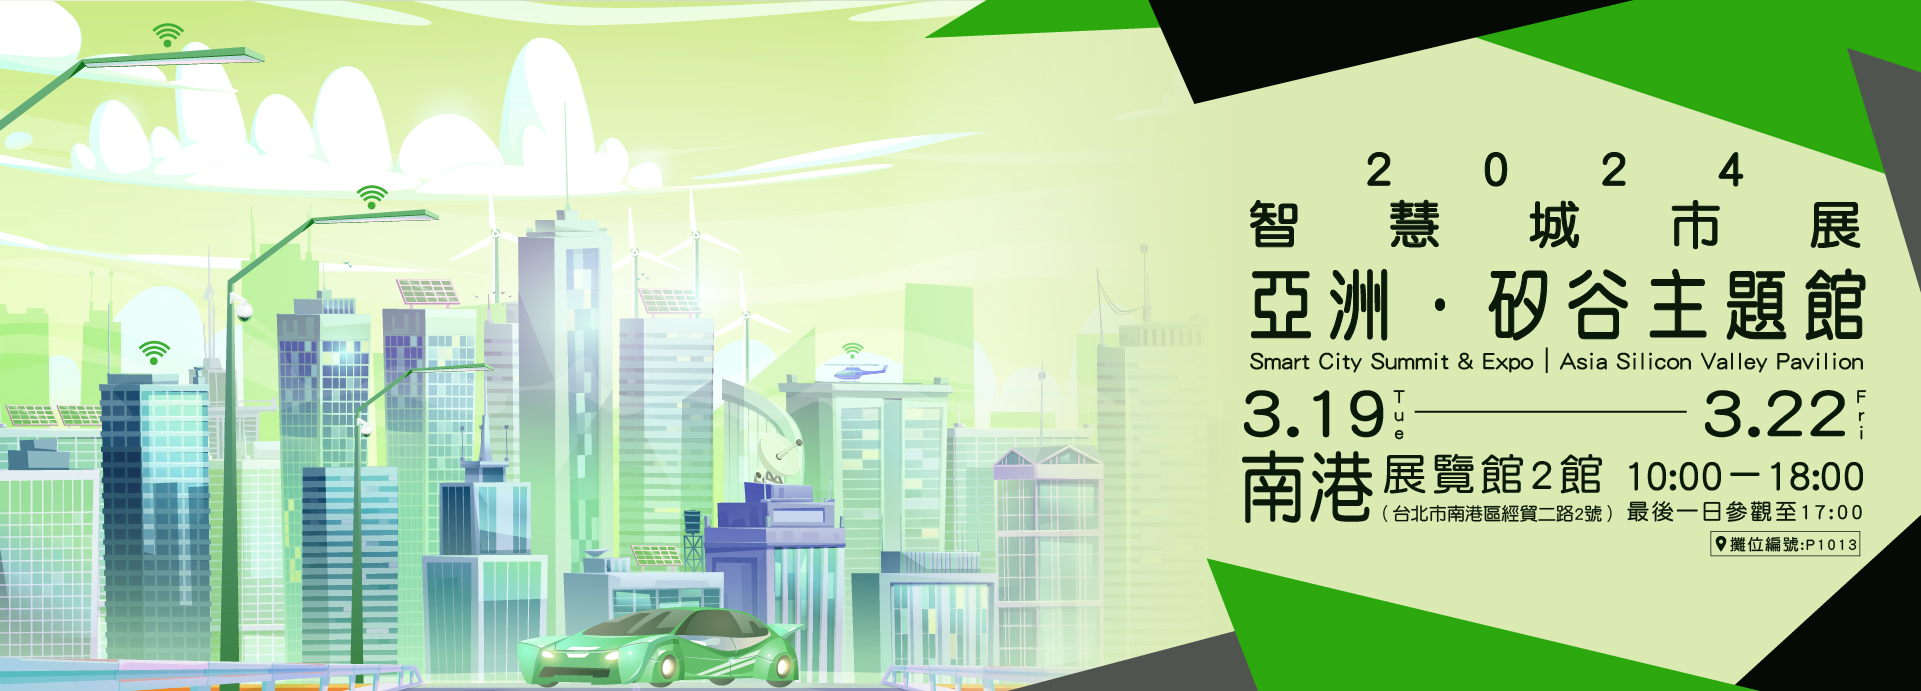 智慧城市展隆重登場 亞洲‧矽谷3.0攜手產業引領臺灣邁向國際